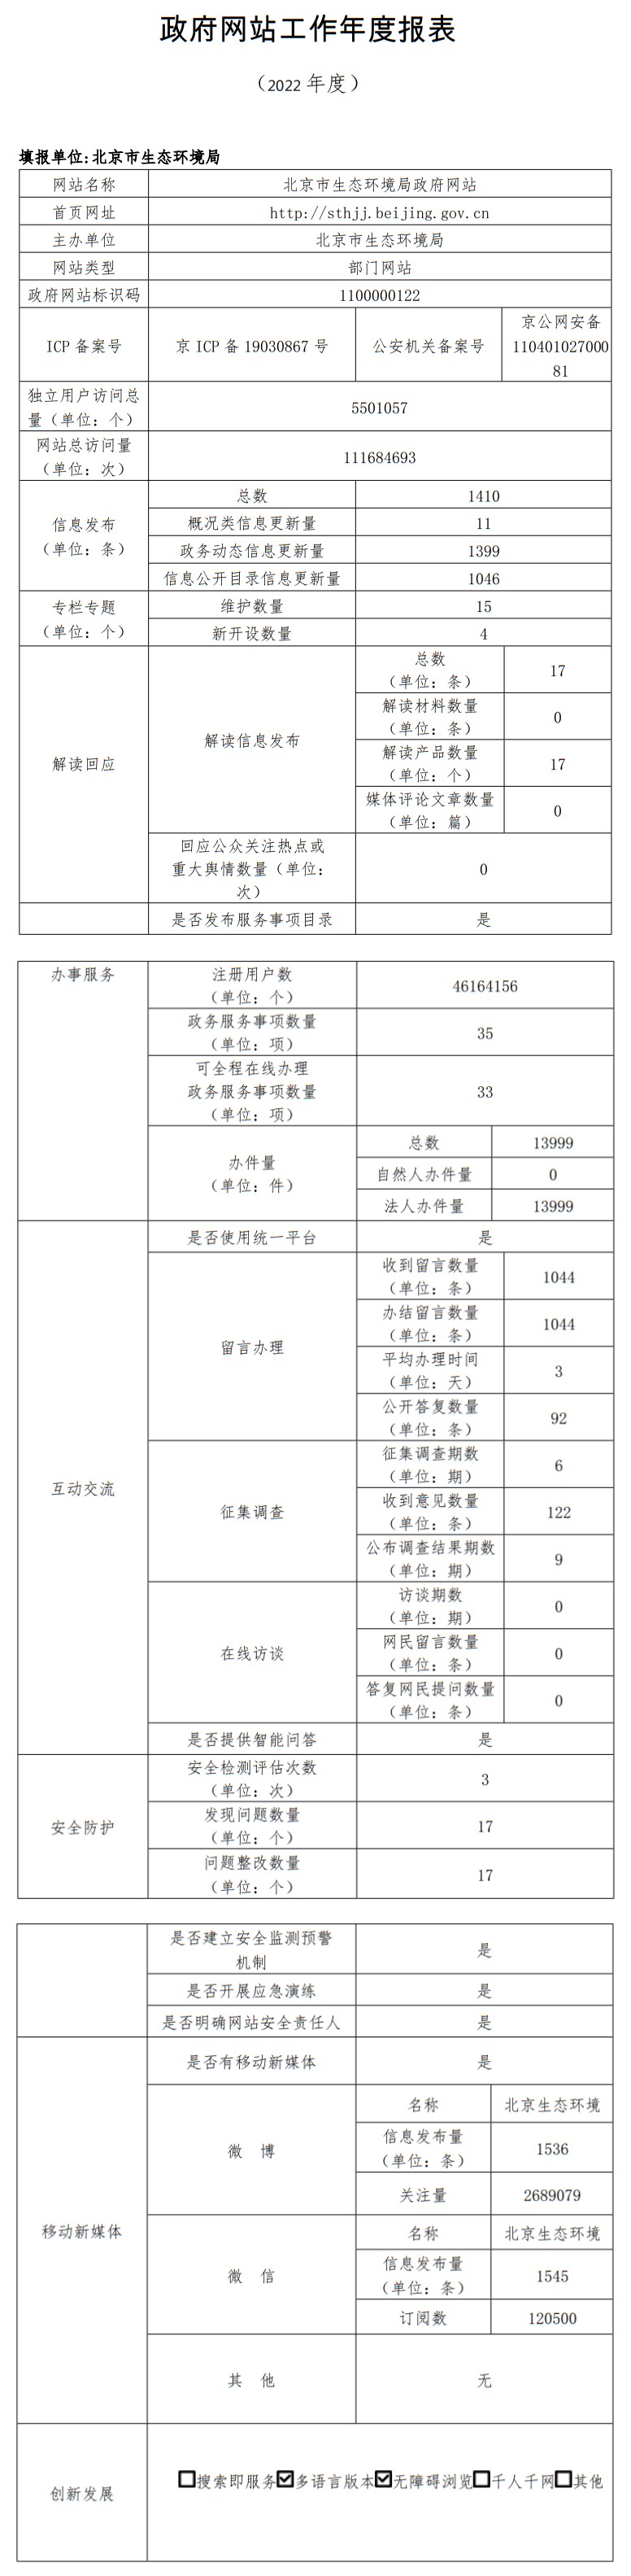 北京市生態環境局2022年政府網站年度工作報表